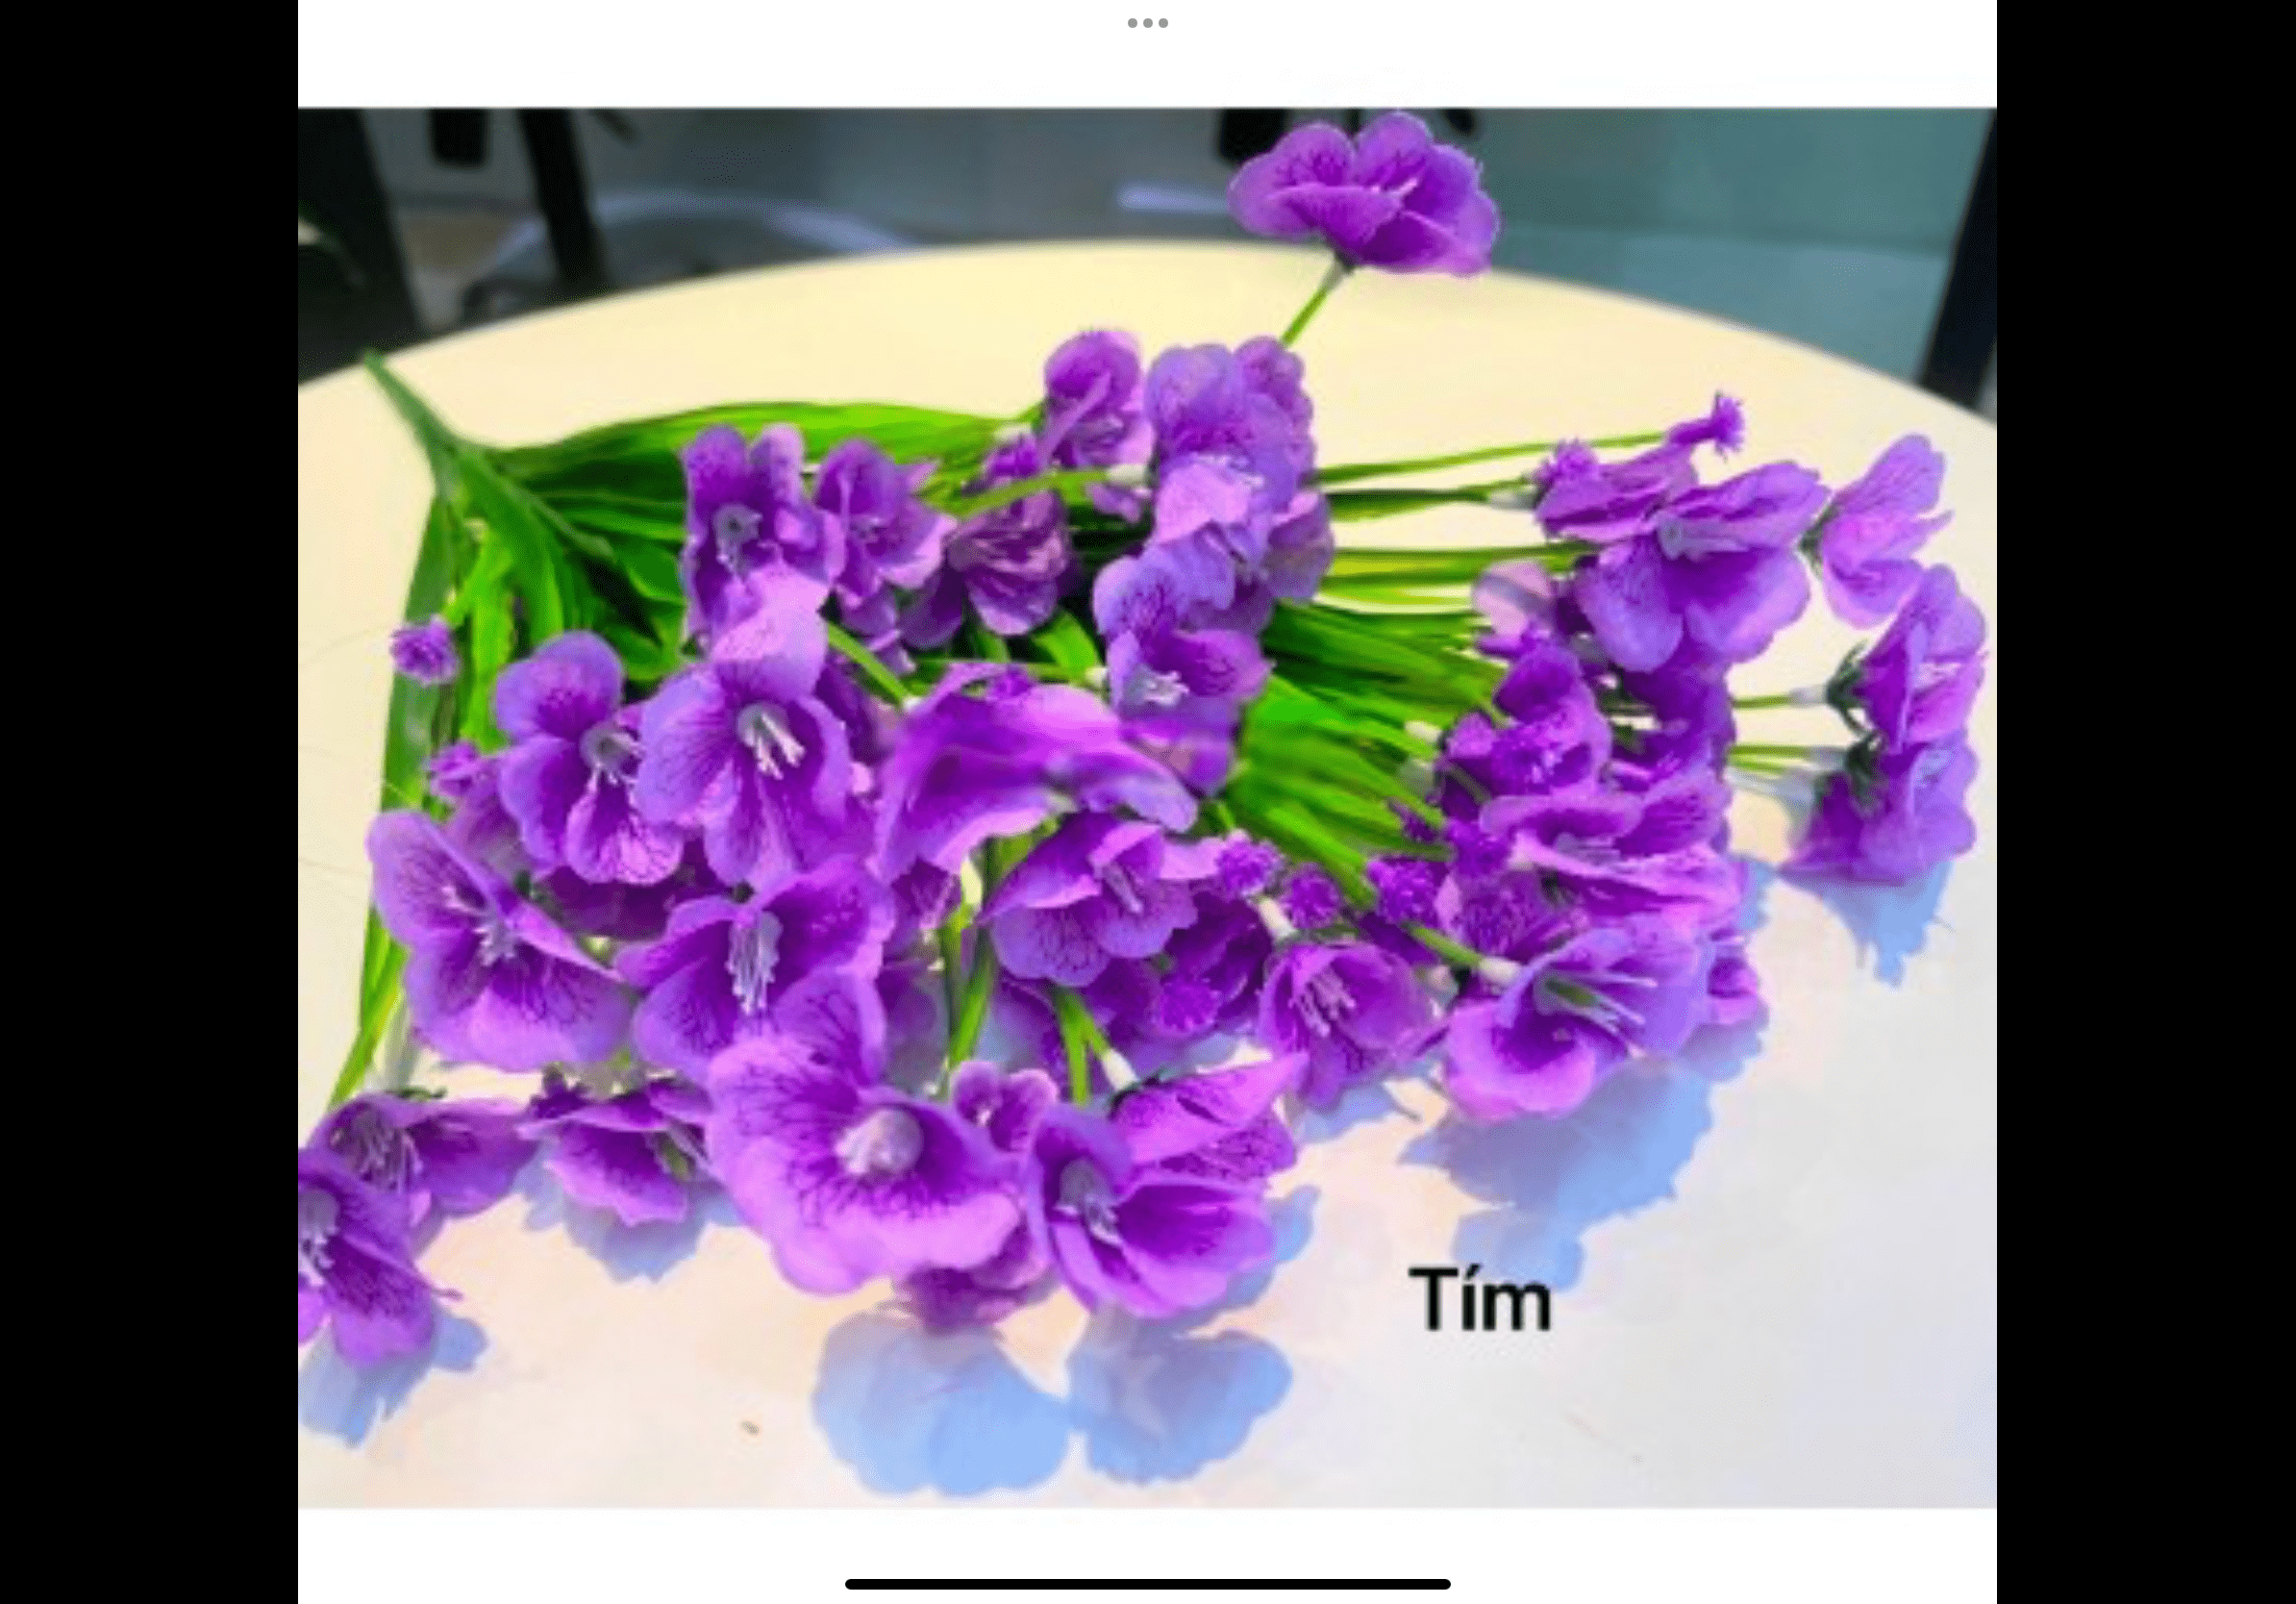 Chậu hoa thuỷ tiên giả trang trí – Nhiều màu sắc – Bình hoa cắm sẵn cây giả, hoa lụa decor – Cụm hoa dài khoảng 30 cm gồm 7 nhánh – Bình hoa cao từ 30 đến 35 cm